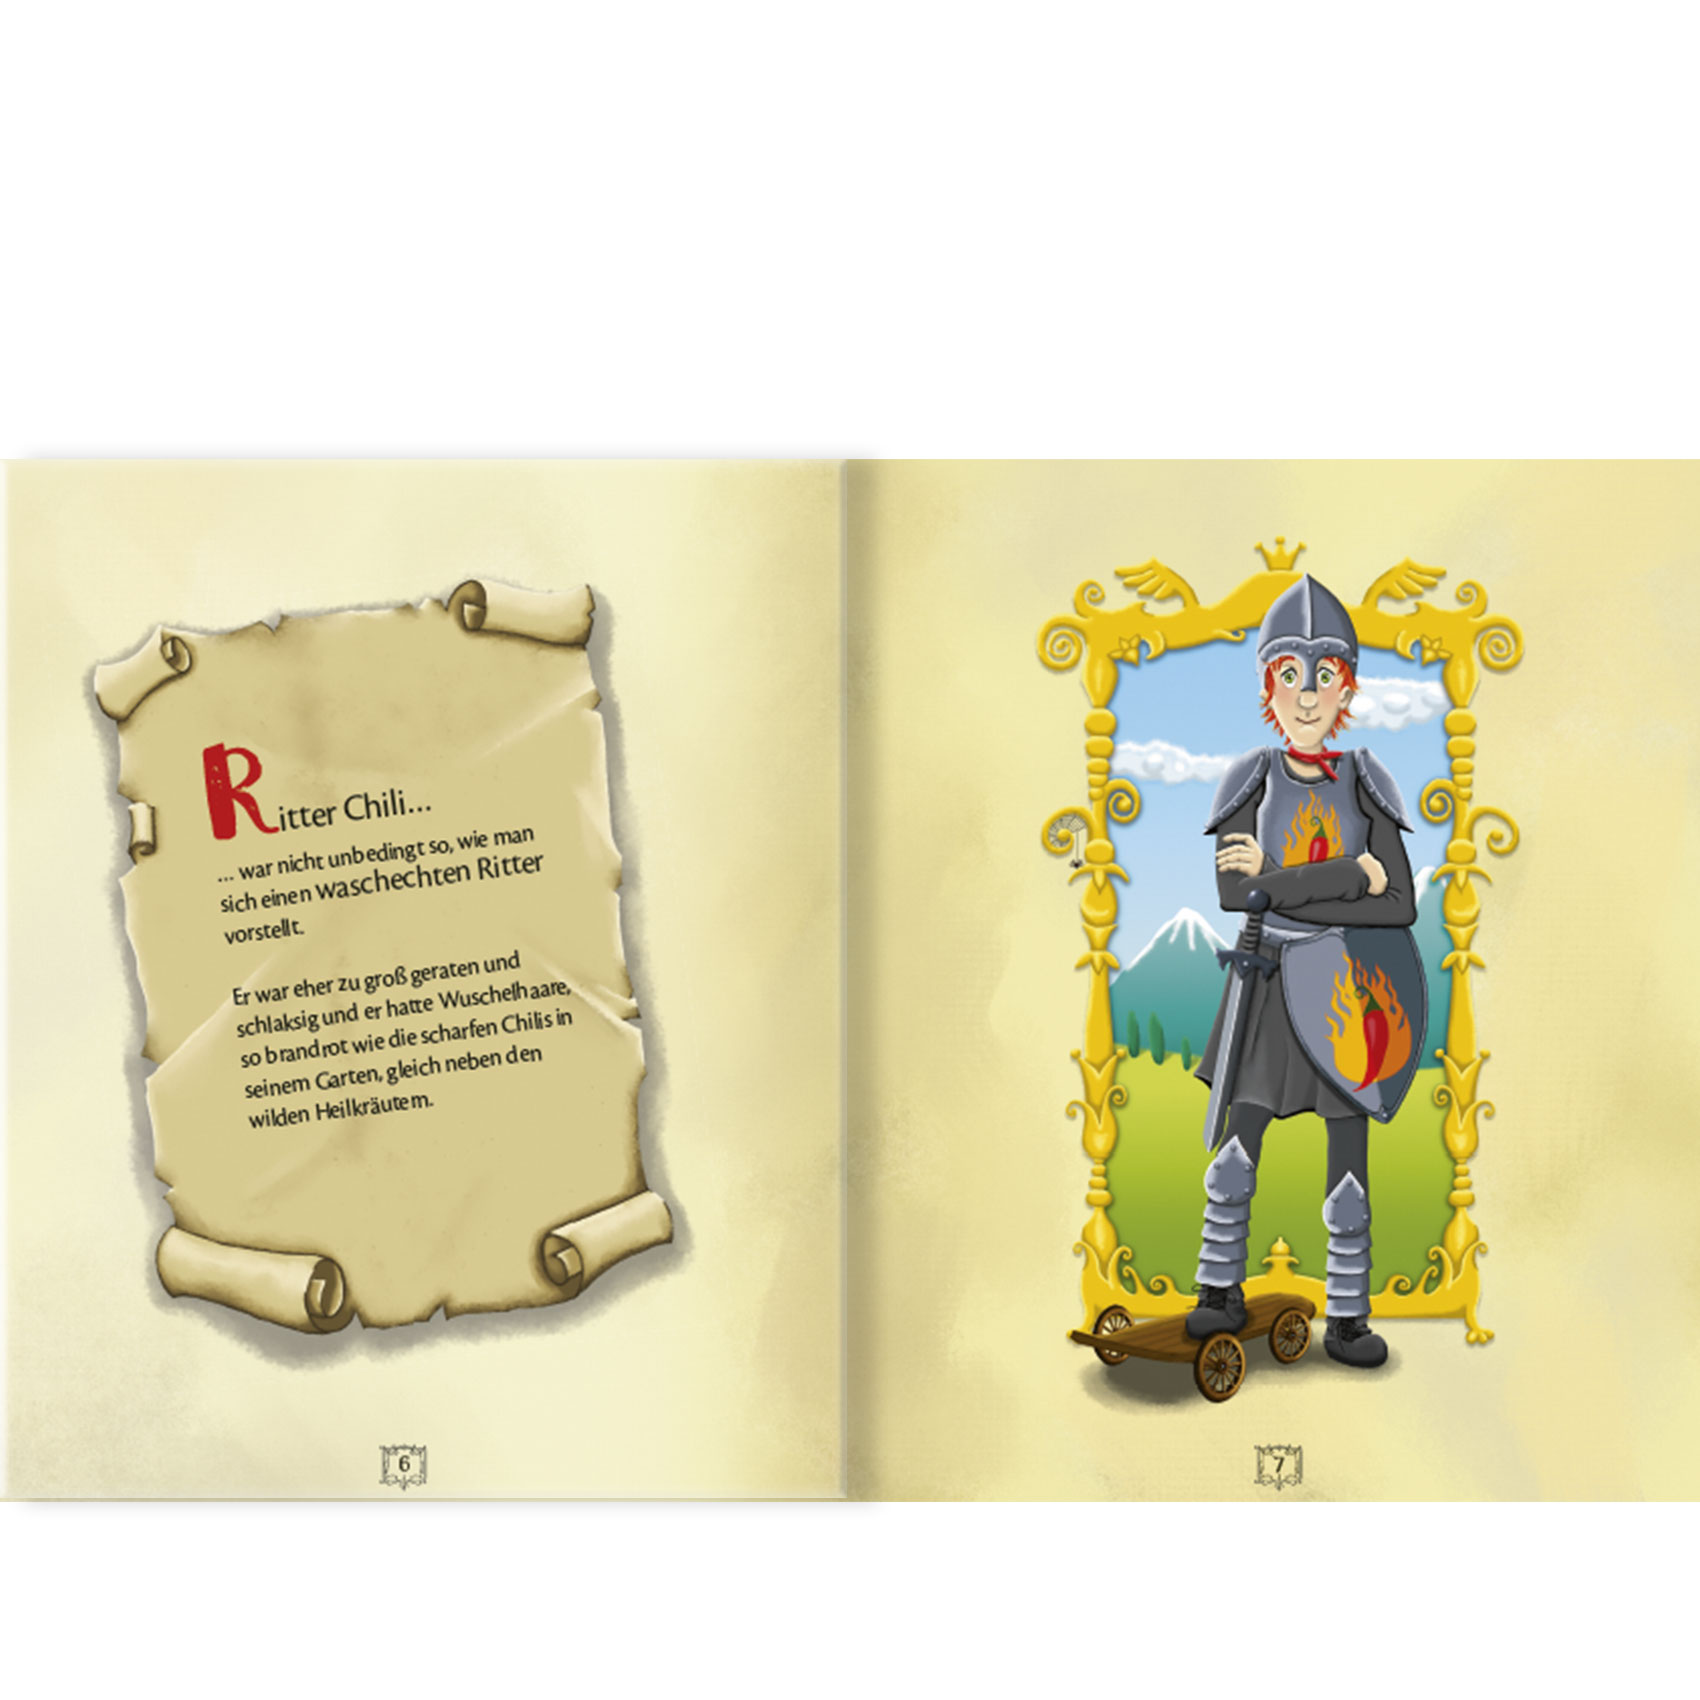 Ritter Chili im Einhornwald | Kinderbuch